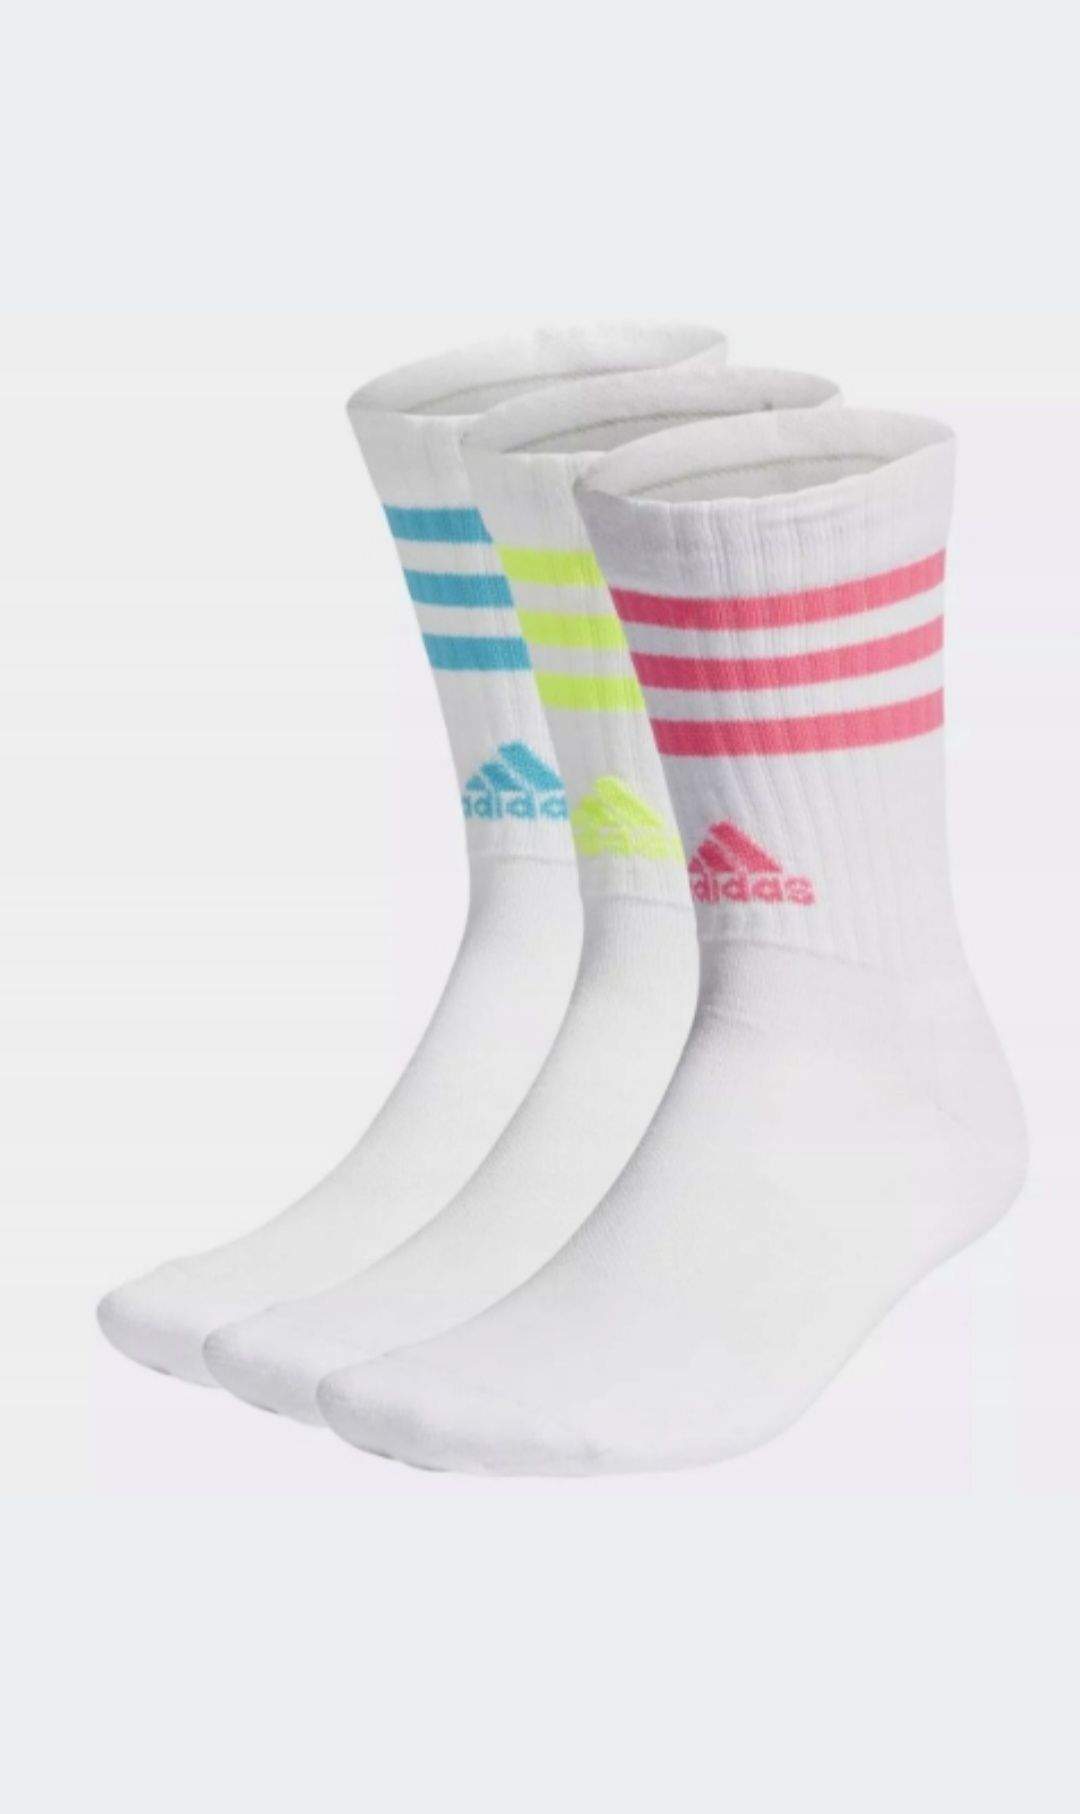 Nowe skarpety męskie Adidas CUSHIONED białe 3 pary rozmiar 43-45